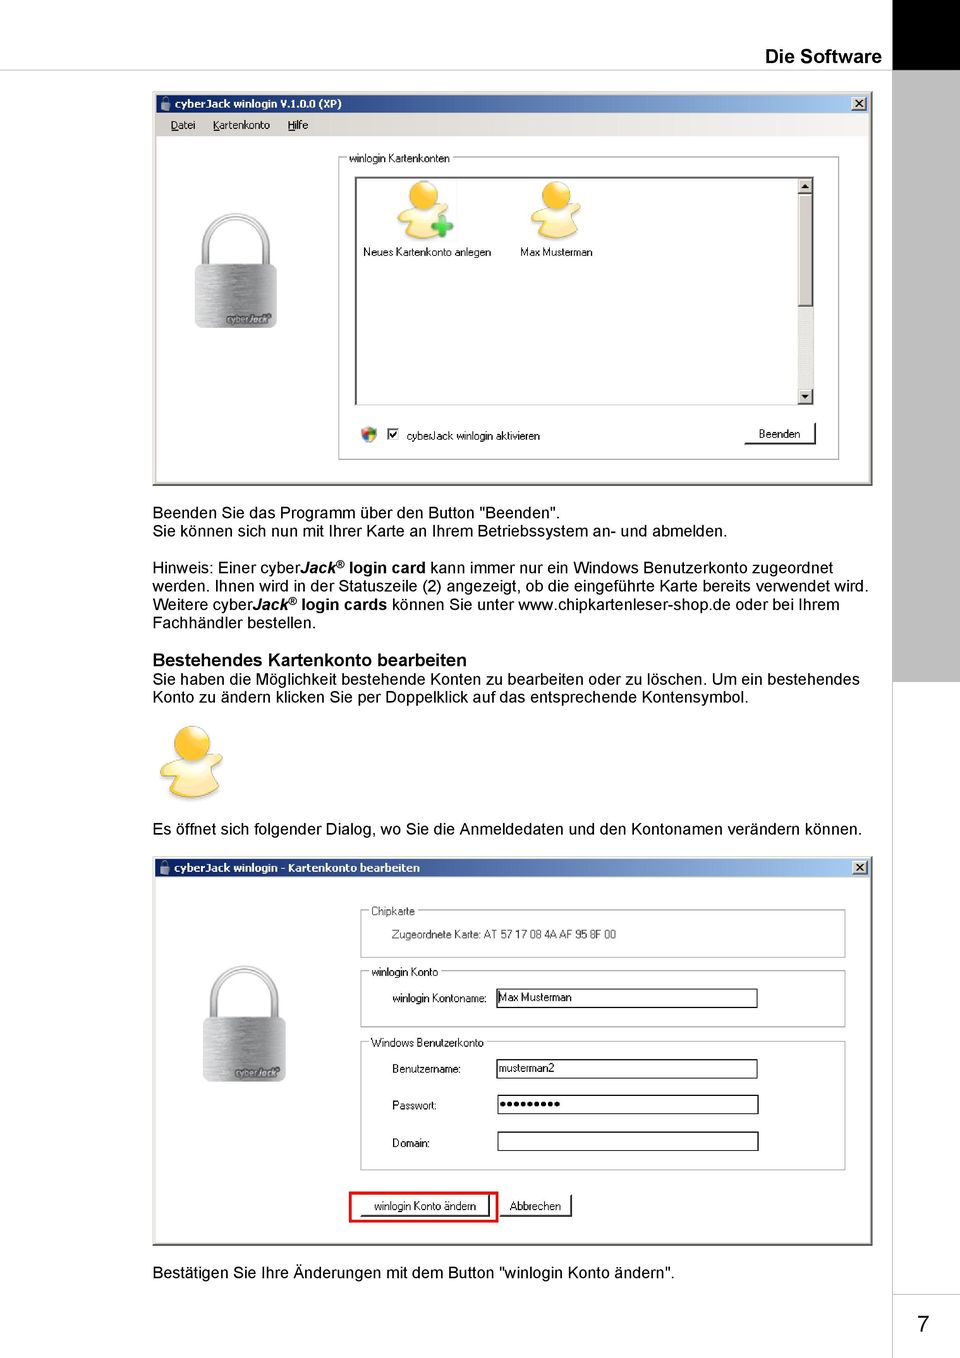 Weitere cyberjack login cards können Sie unter www.chipkartenleser-shop.de oder bei Ihrem Fachhändler bestellen.